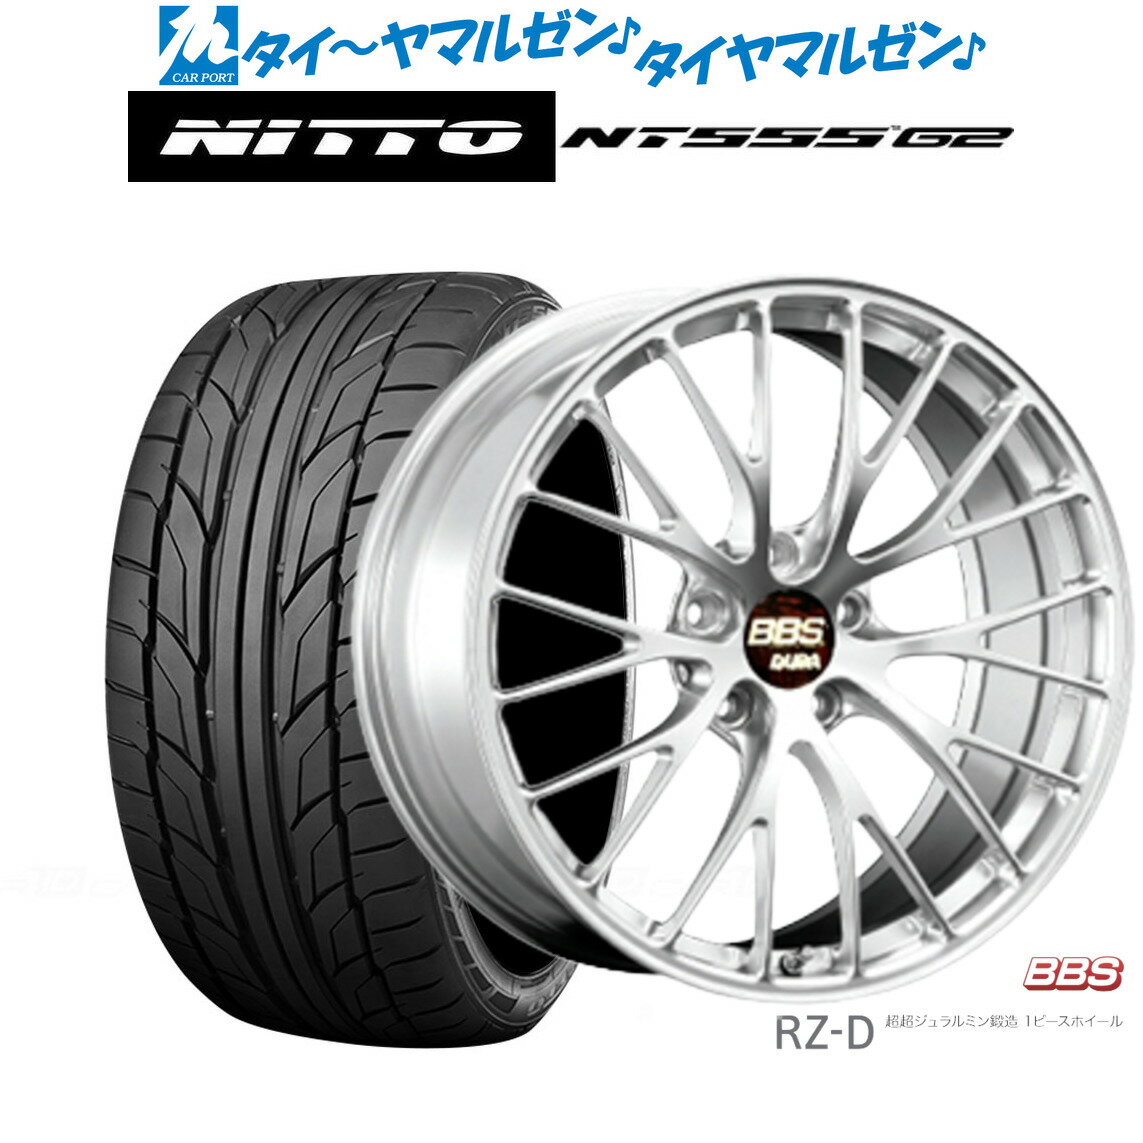 [5/20]割引クーポン配布新品 サマータイヤ ホイール4本セットBBS JAPAN RZ-D20インチ 8.5JNITTO NT555 G2 235/35R20